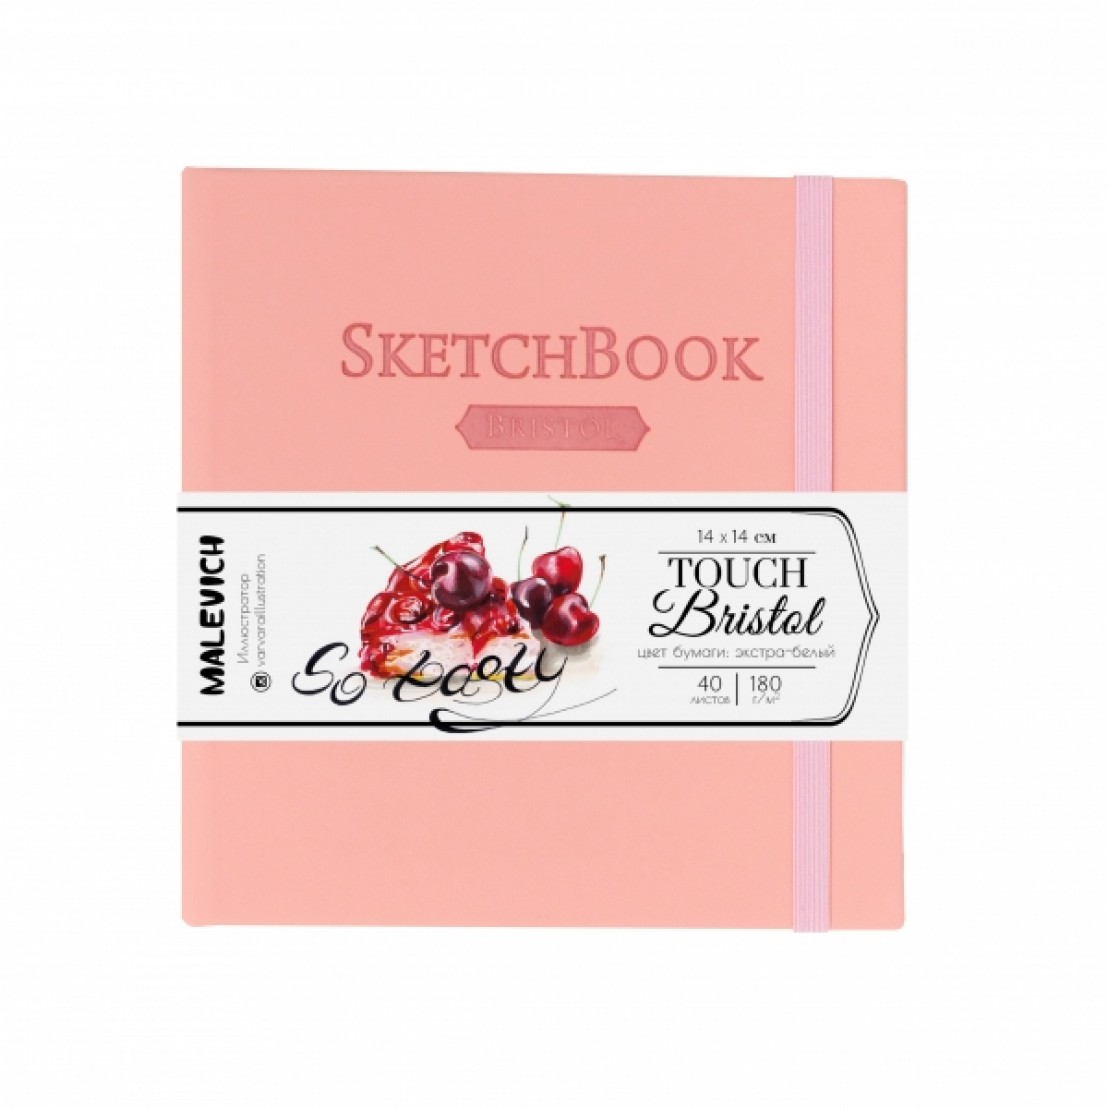 Скетчбук Малевичъ для графики и маркеров Bristol Touch, розовый, 180 г/м, 14х14 см, 40л